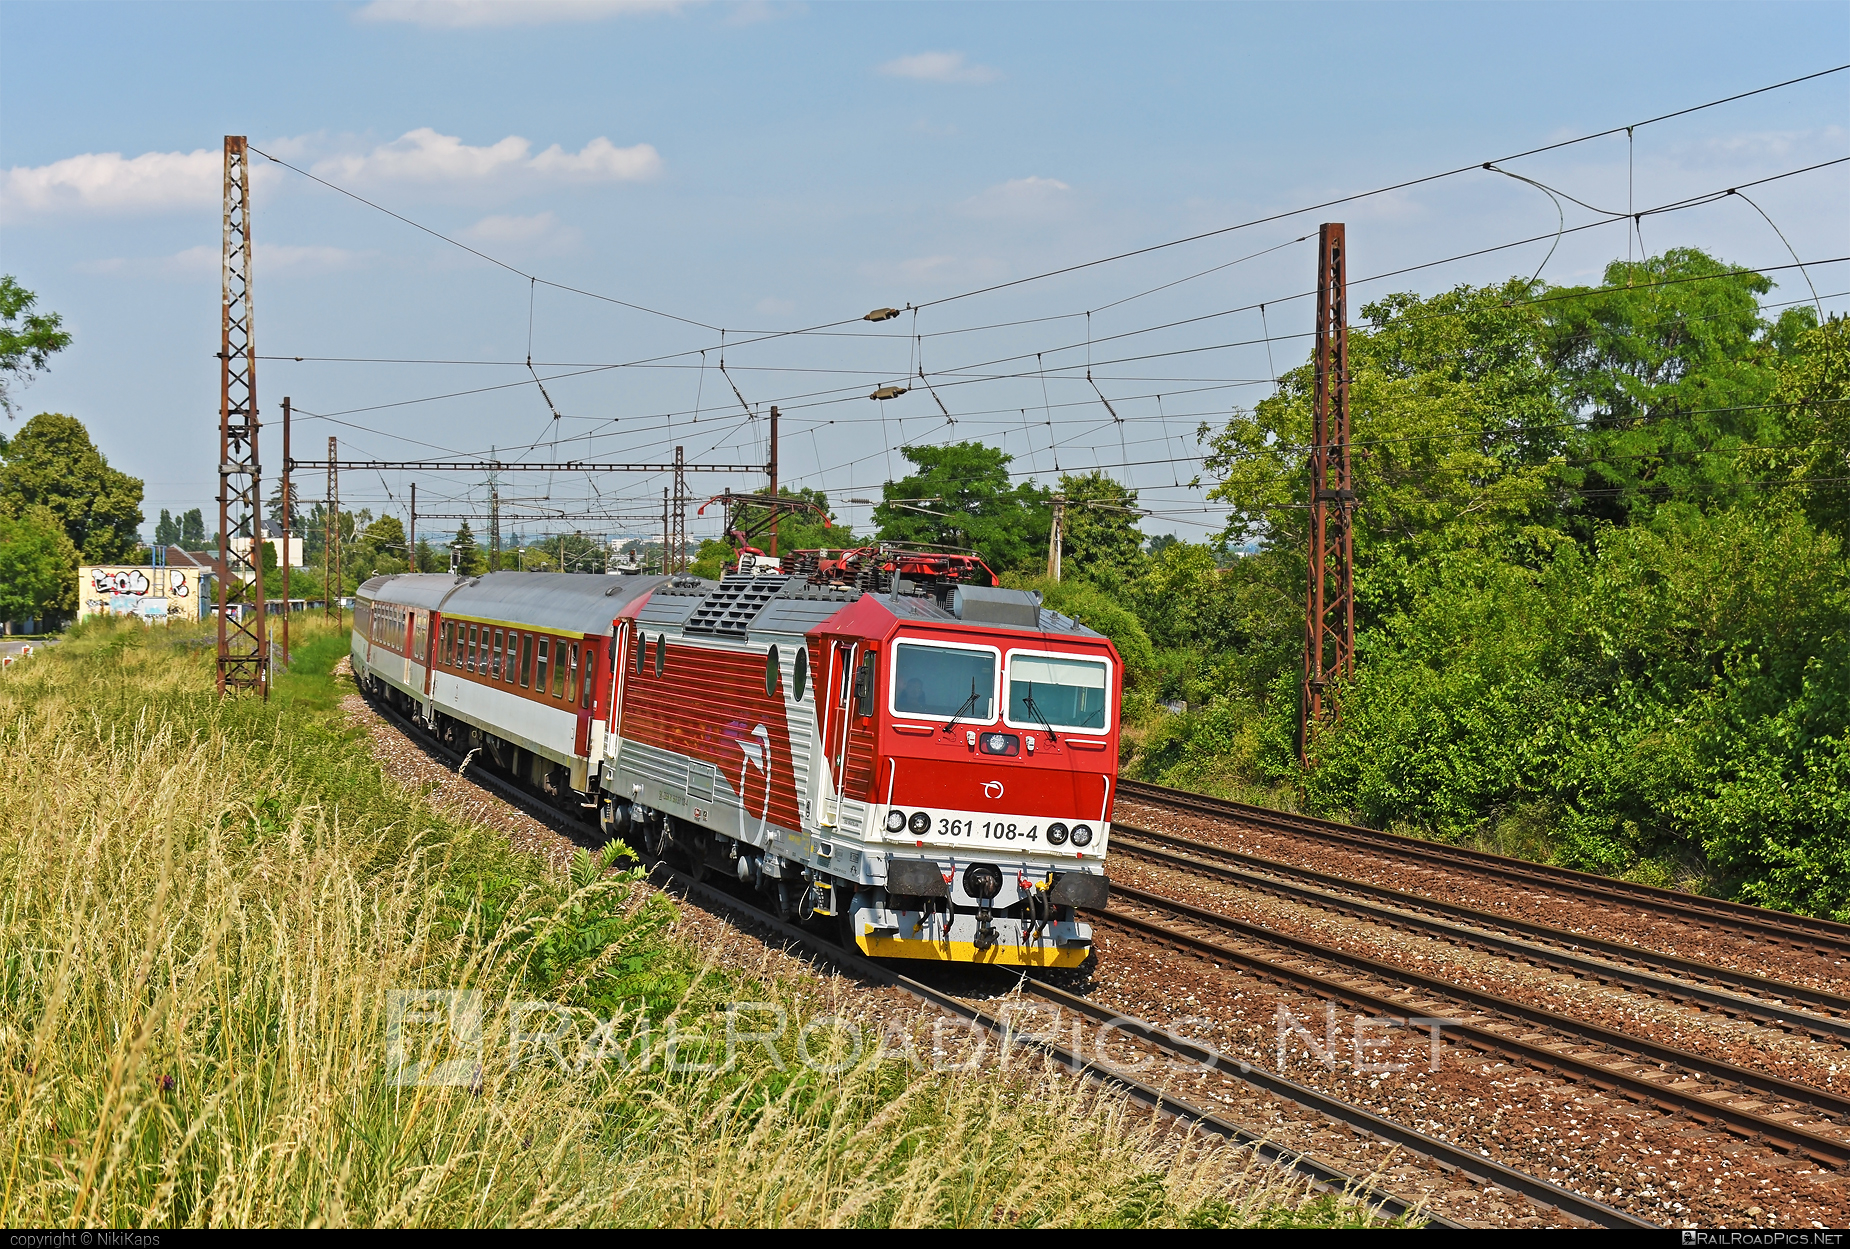 ŽOS Vrútky Class 361.1 - 361 108-4 operated by Železničná Spoločnost' Slovensko, a.s. #ZeleznicnaSpolocnostSlovensko #locomotive361 #locomotive3611 #zosvrutky #zssk